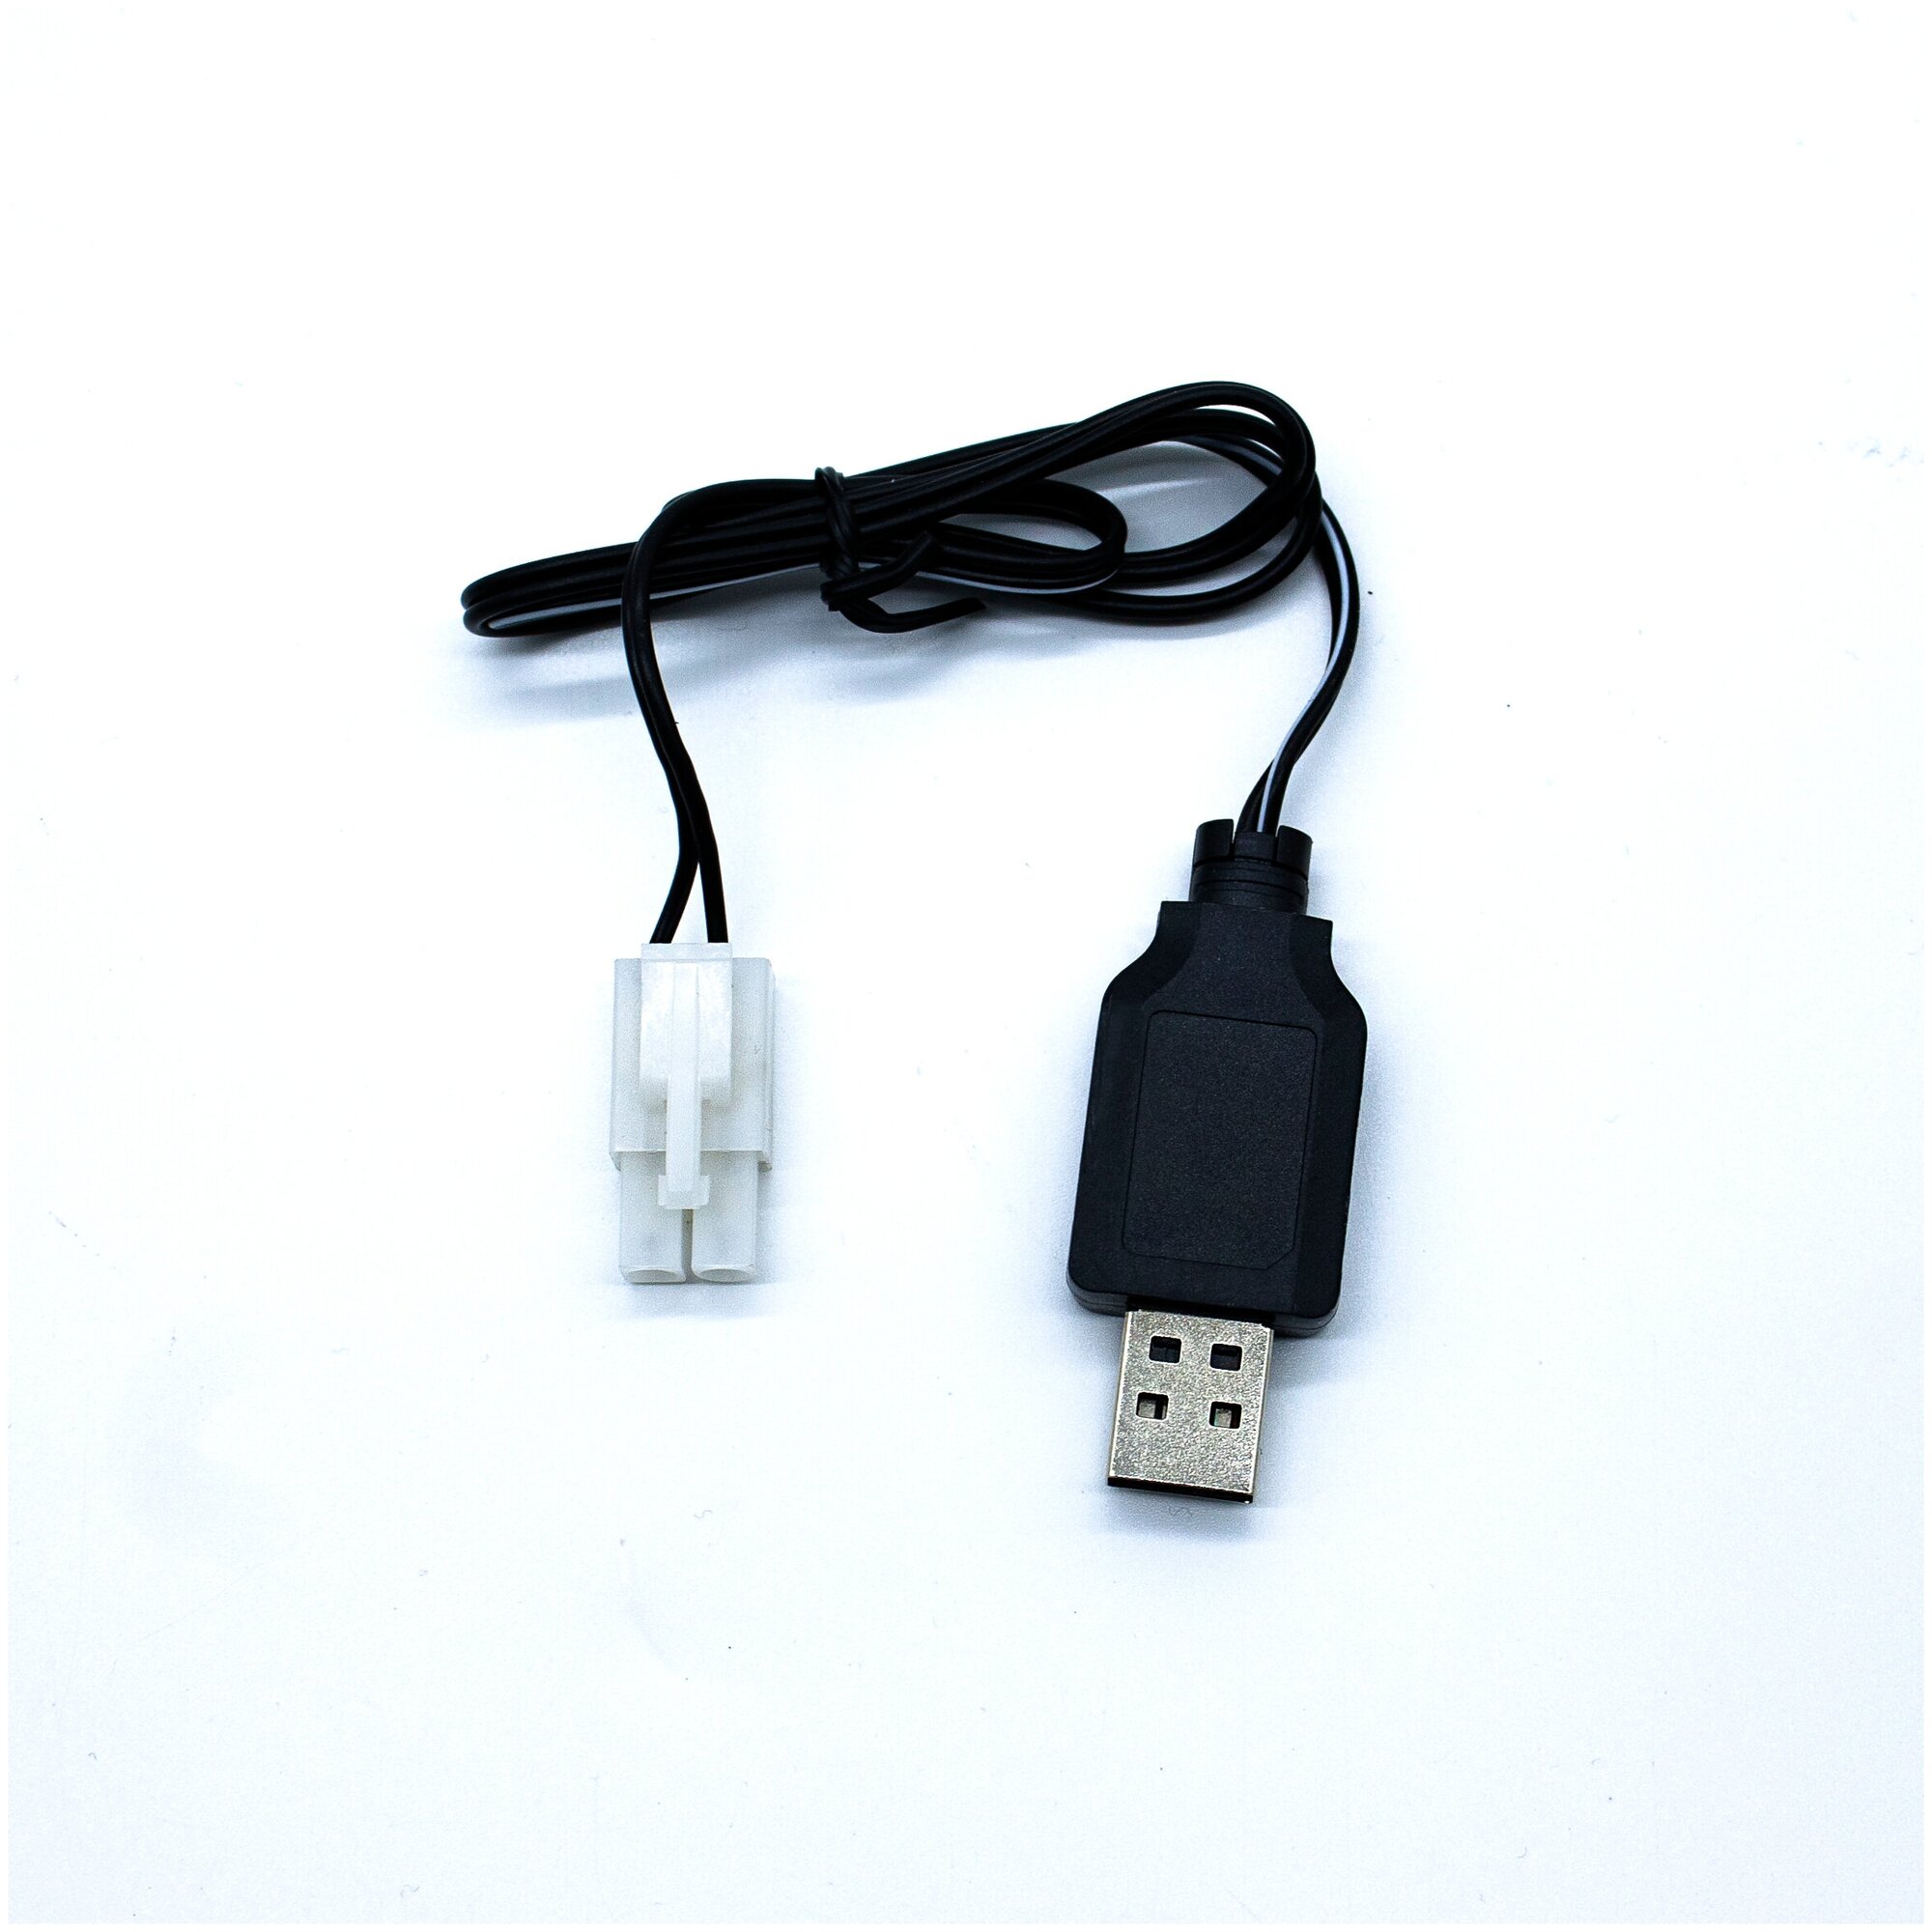 Зарядное устройство USB 7,2V, разъем Tamiya для радиоуправляемых игрушек